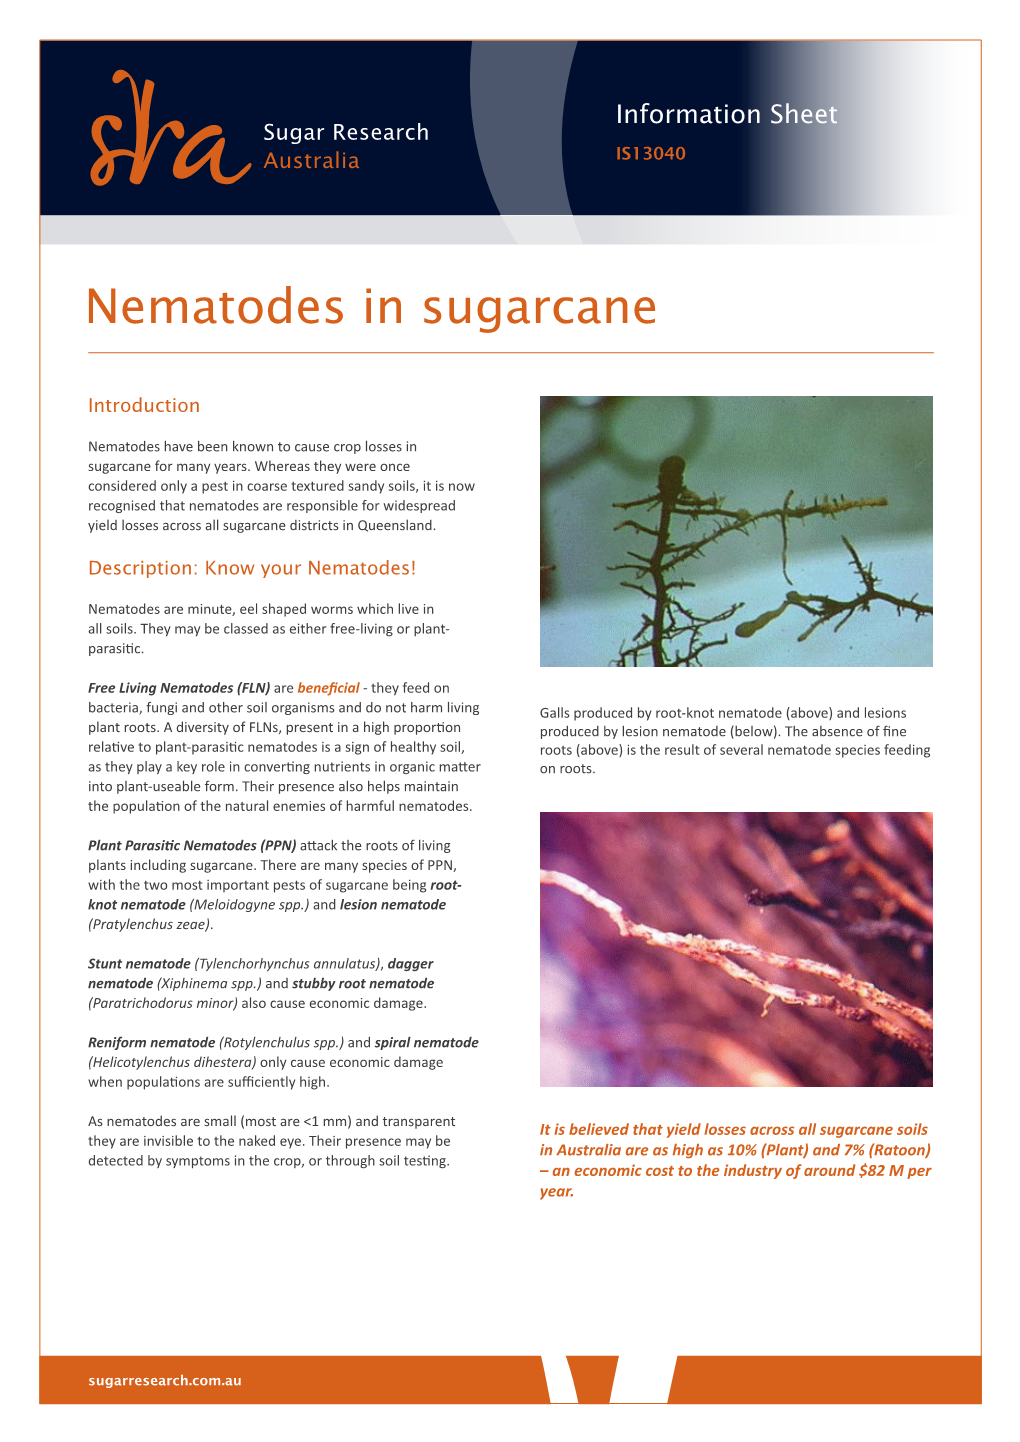 Nematodes in Sugarcane